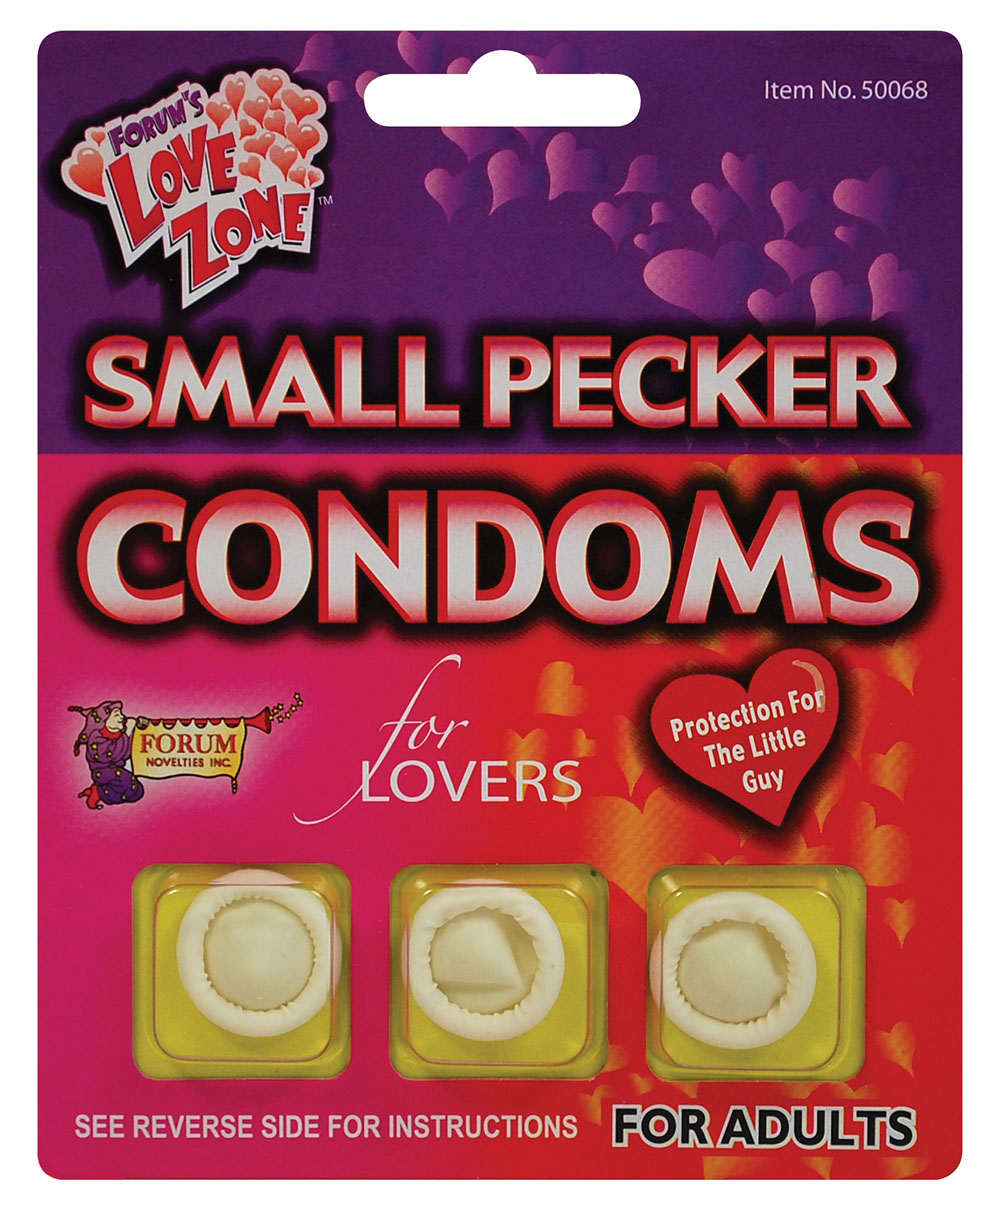 Small Pecker Condoms.CD/3